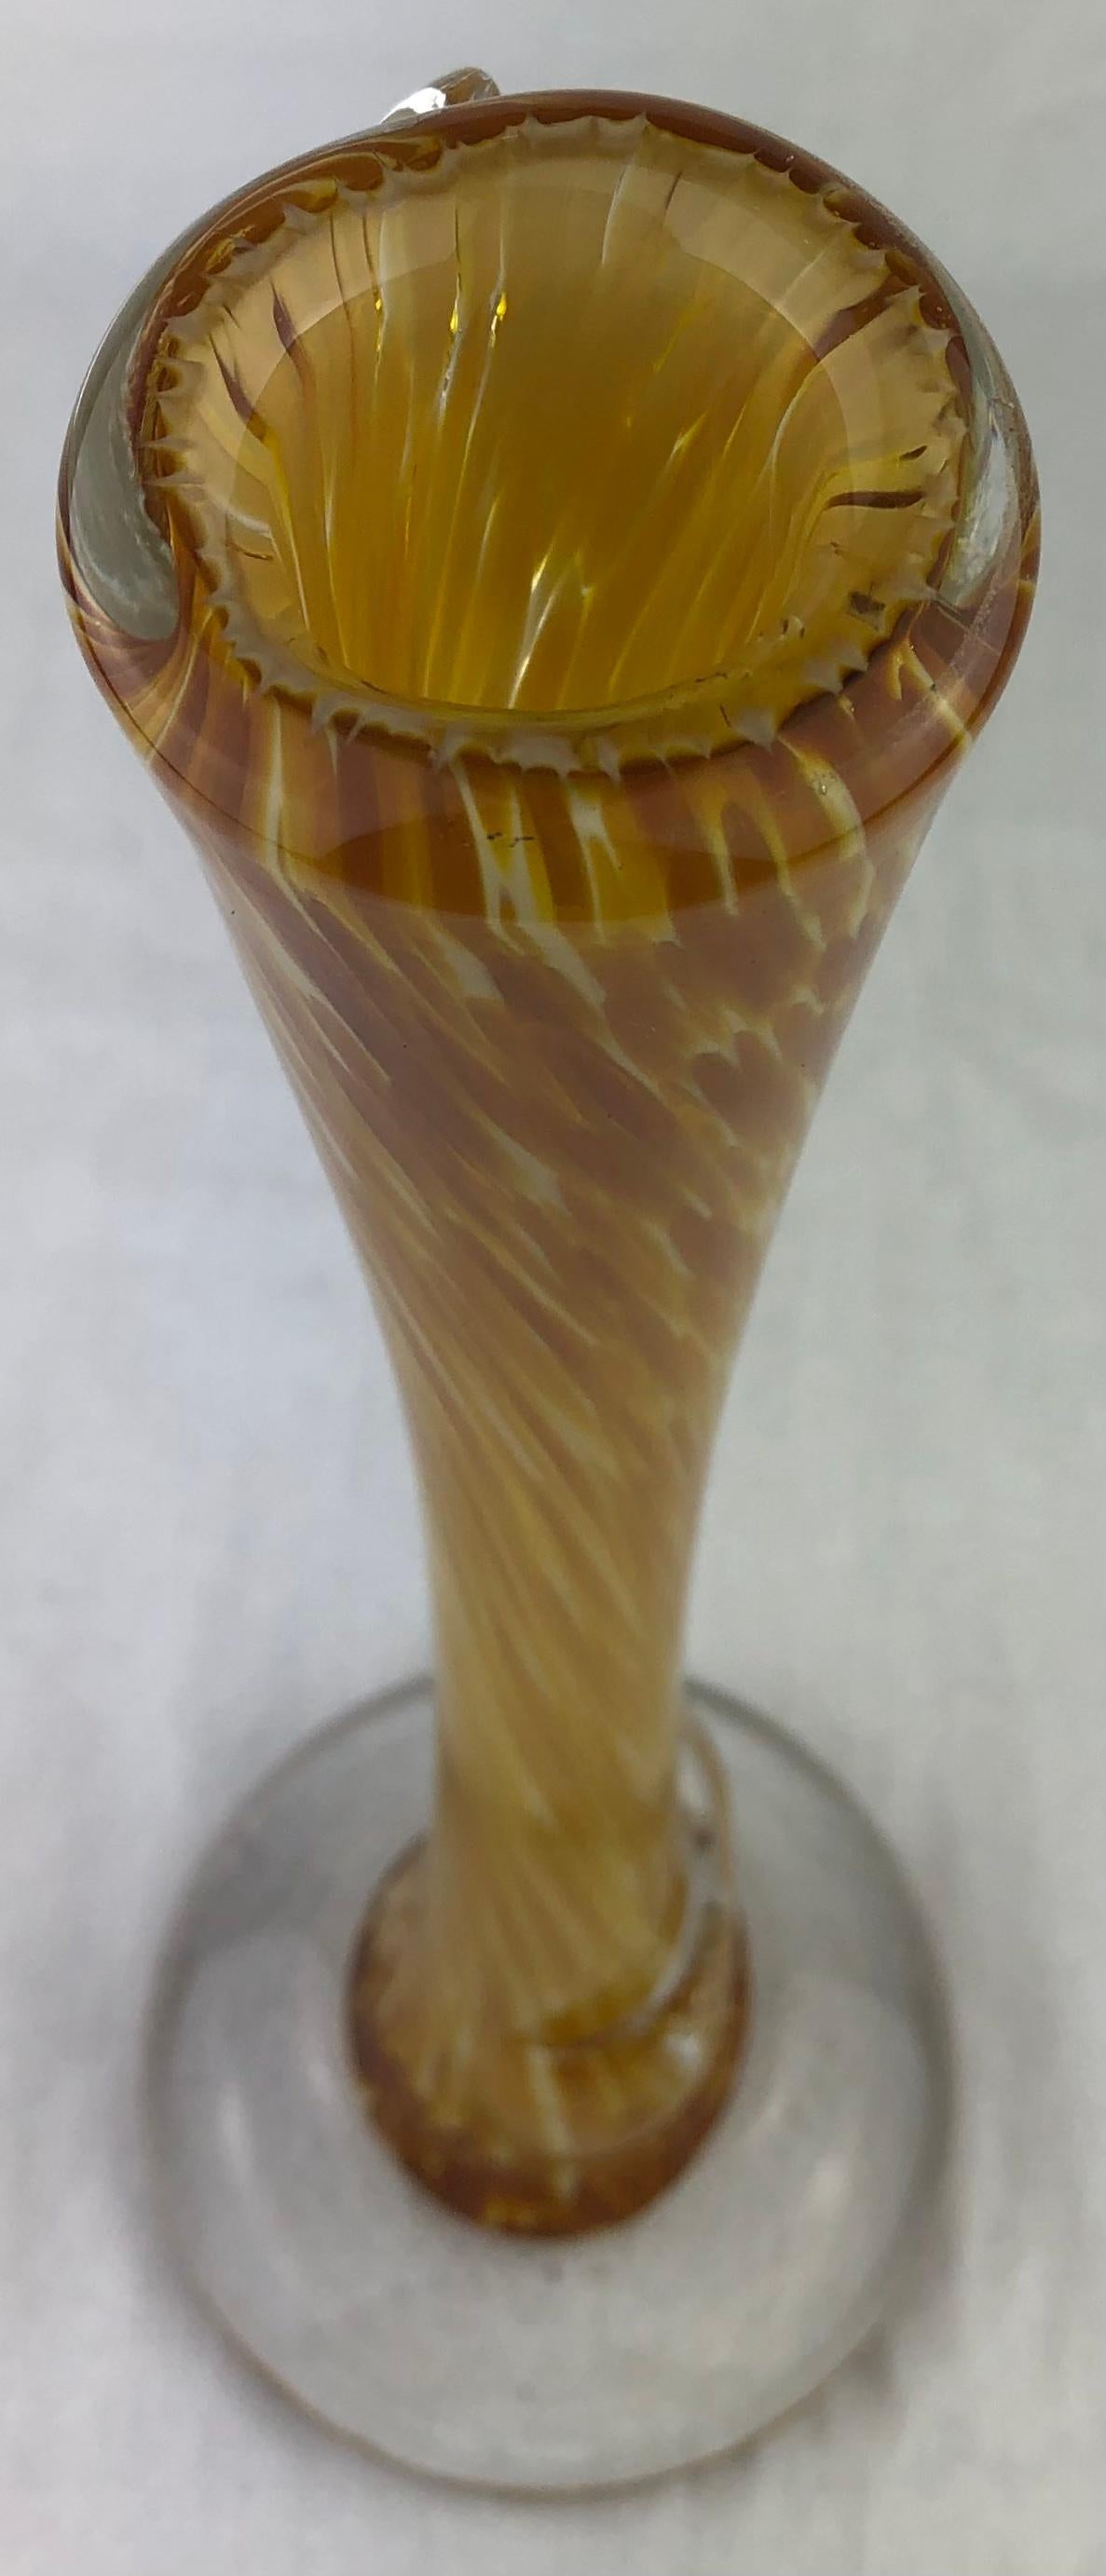 Grand vase en verre d'art français du milieu du siècle dernier, à col entonnoir, à tige ou à fleur unique. 
Une forme élégante et des couleurs frappantes. 
Soufflé, fabriqué à la main en France. 

Dimensions : 4 3/4